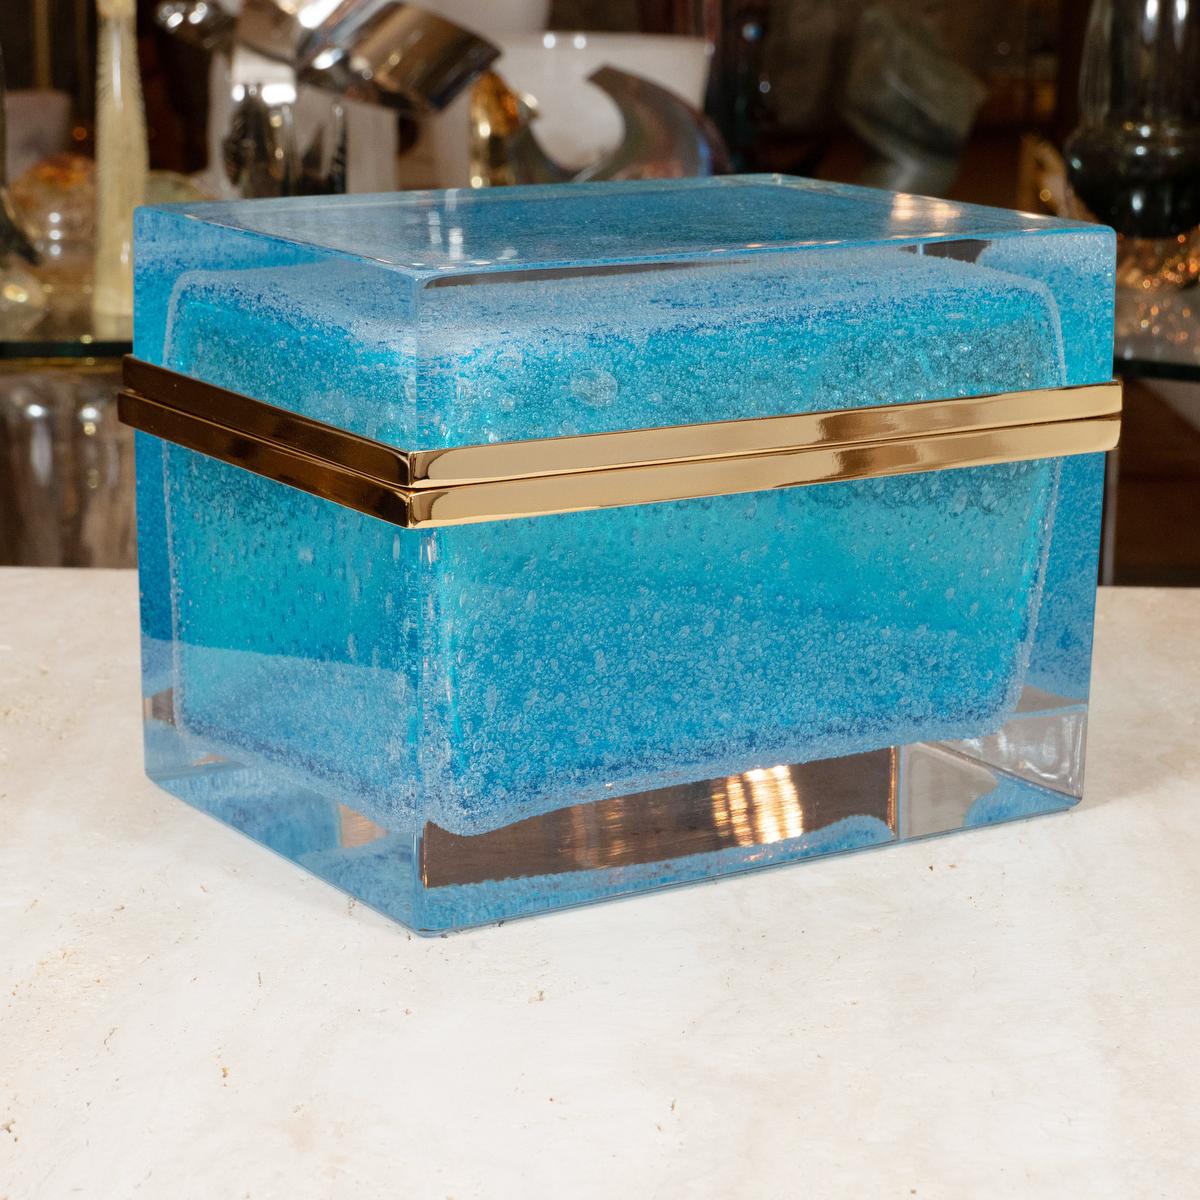 Monumental rectangular Murano glass box with aquamarine pulegoso crystal core.